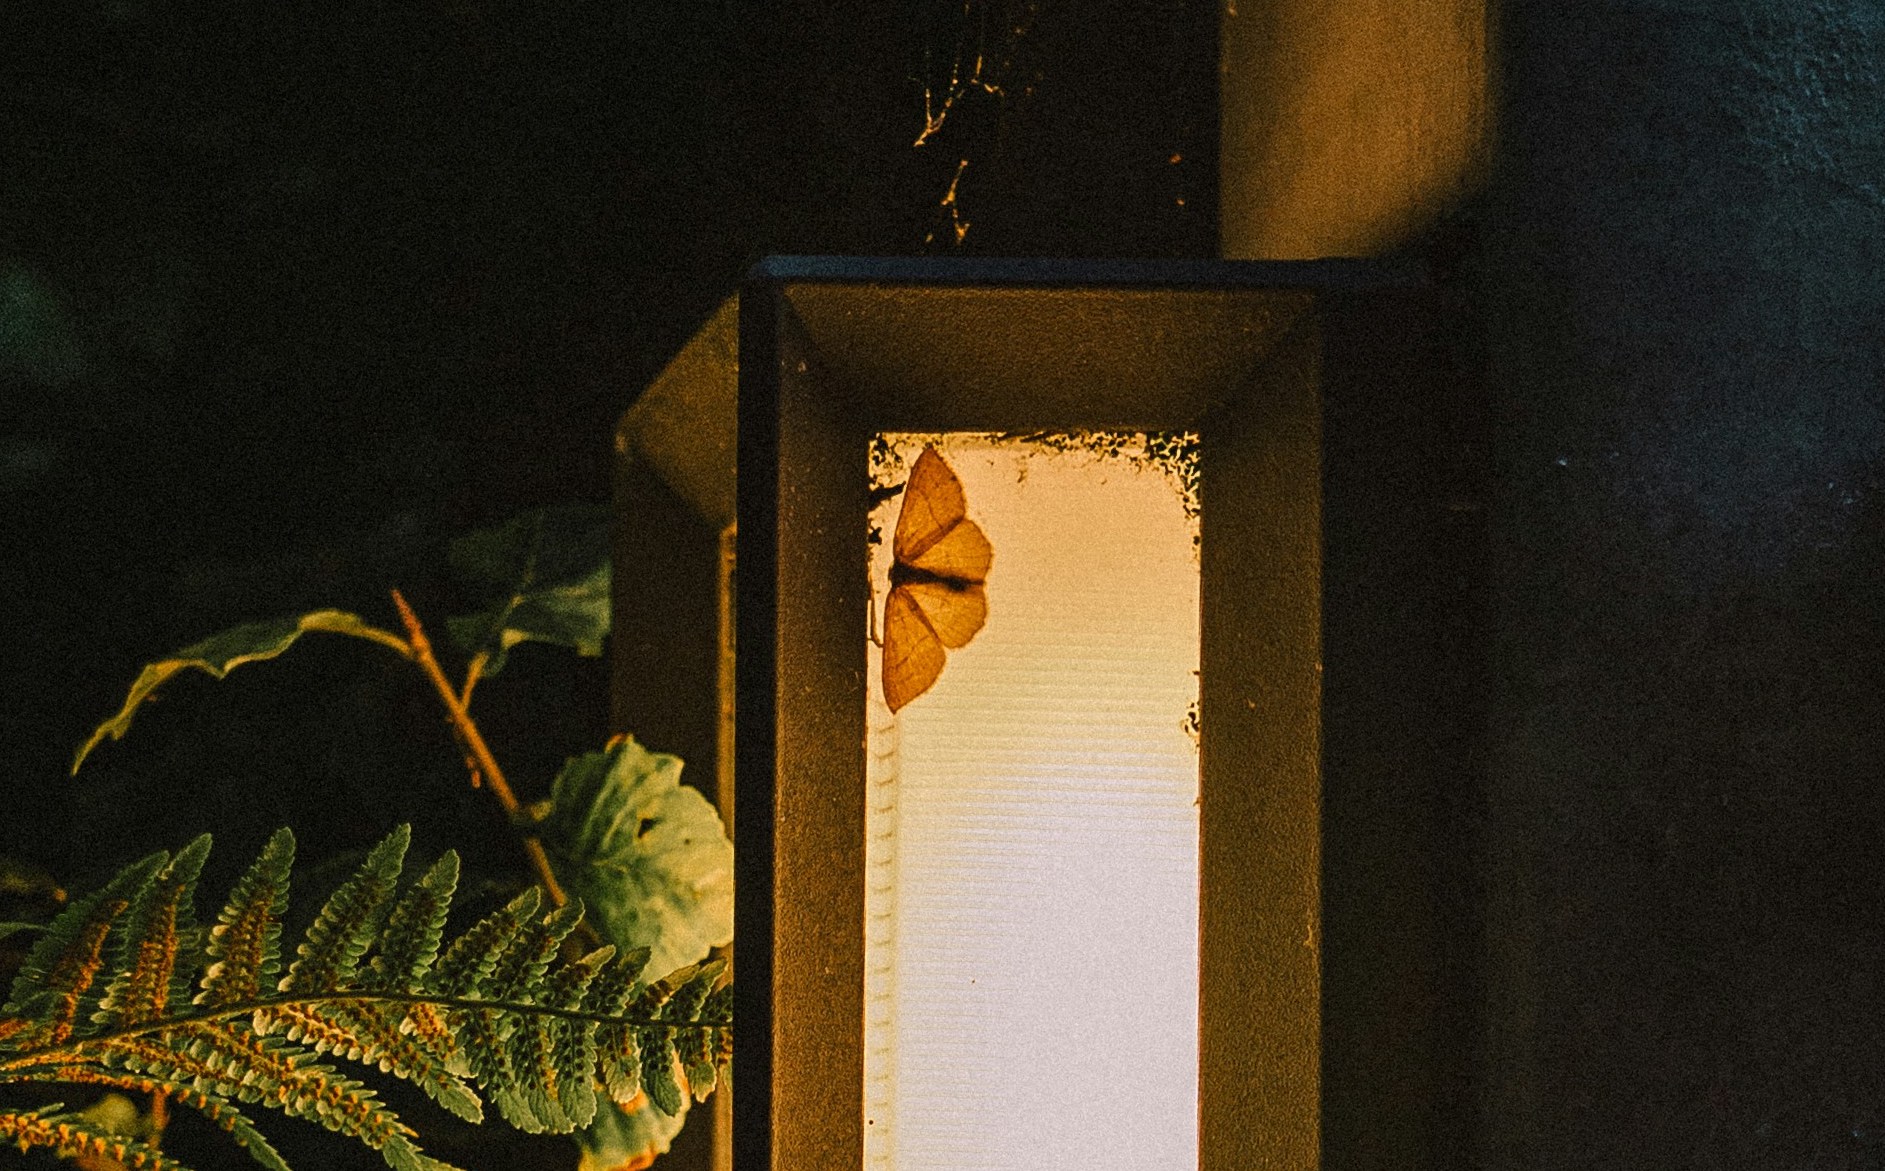 Pourquoi les papillons de nuit sont-ils attirés par la lumière ?